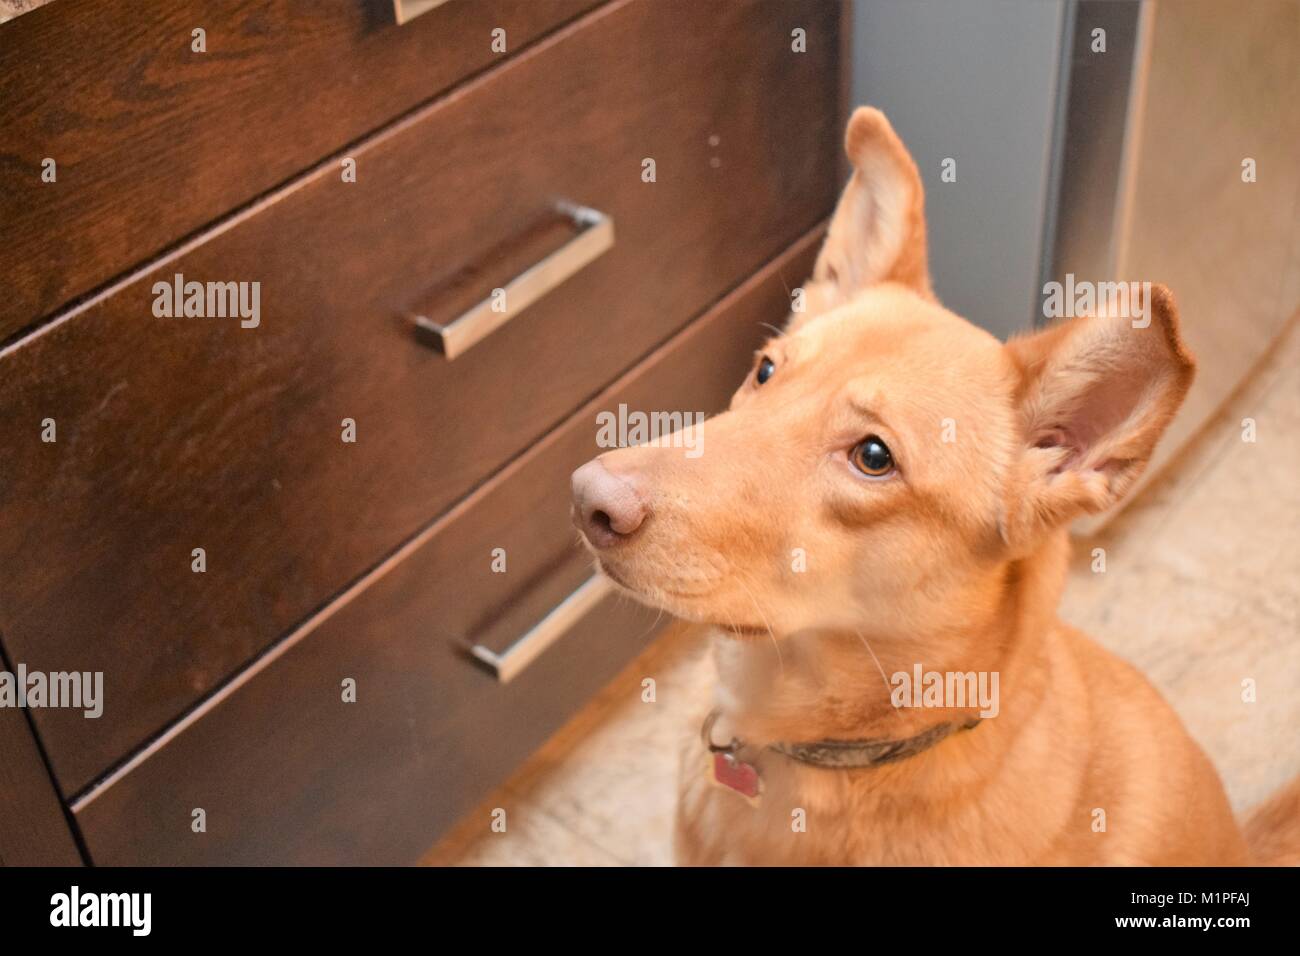 Dog waiting for treat Stock Photo